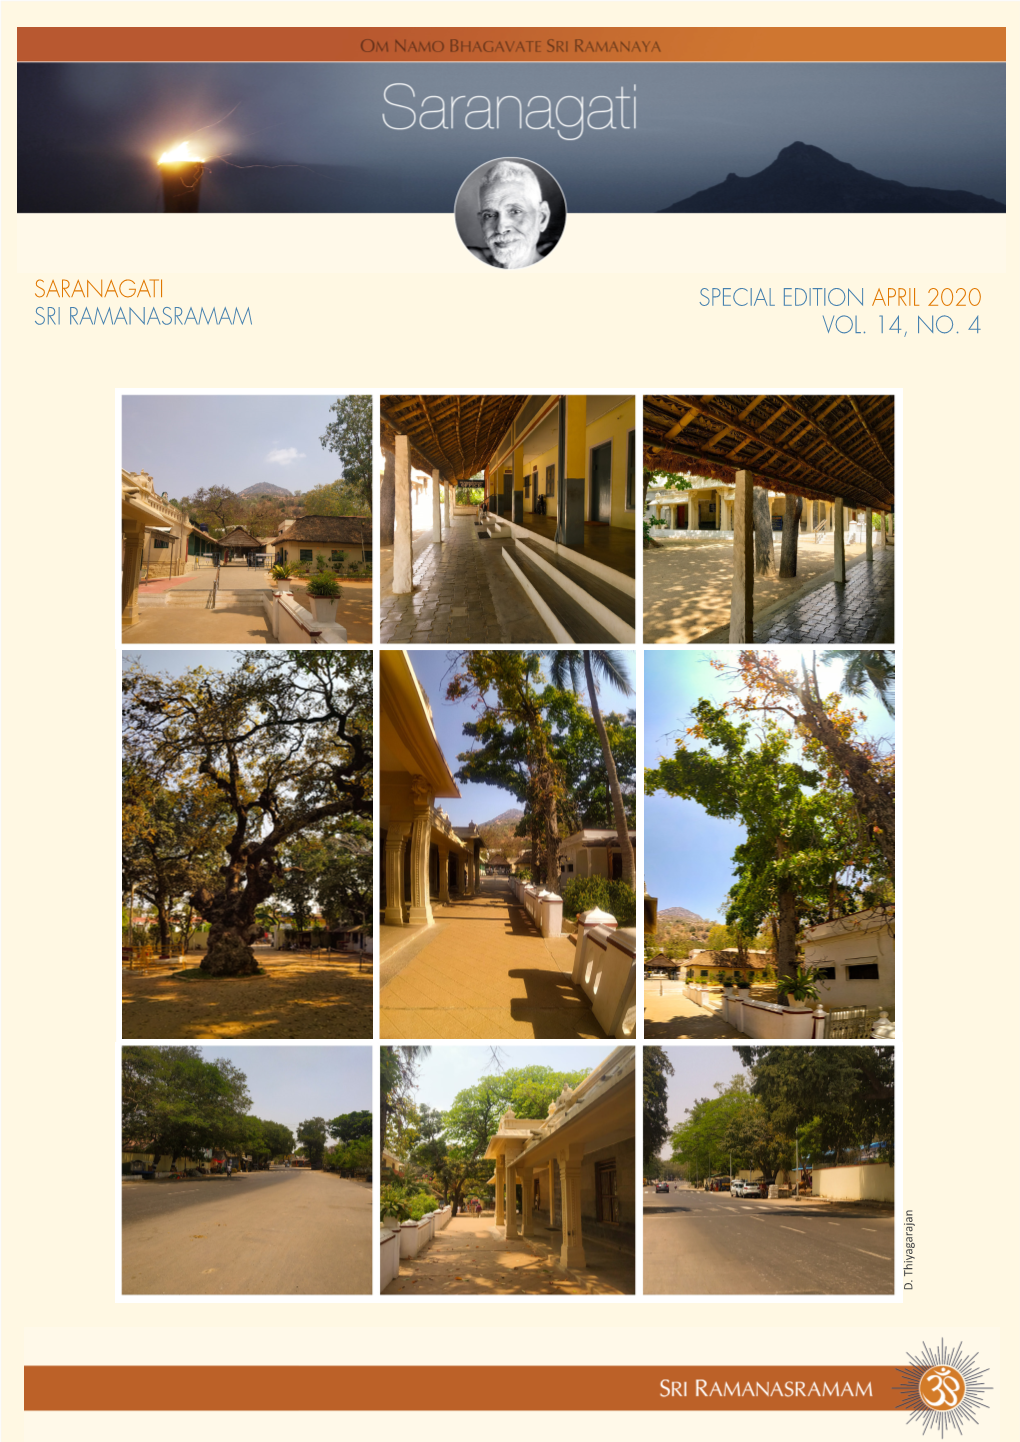 Saranagati Sri Ramanasramam Special Edition April 2020 Vol. 14, No. 4